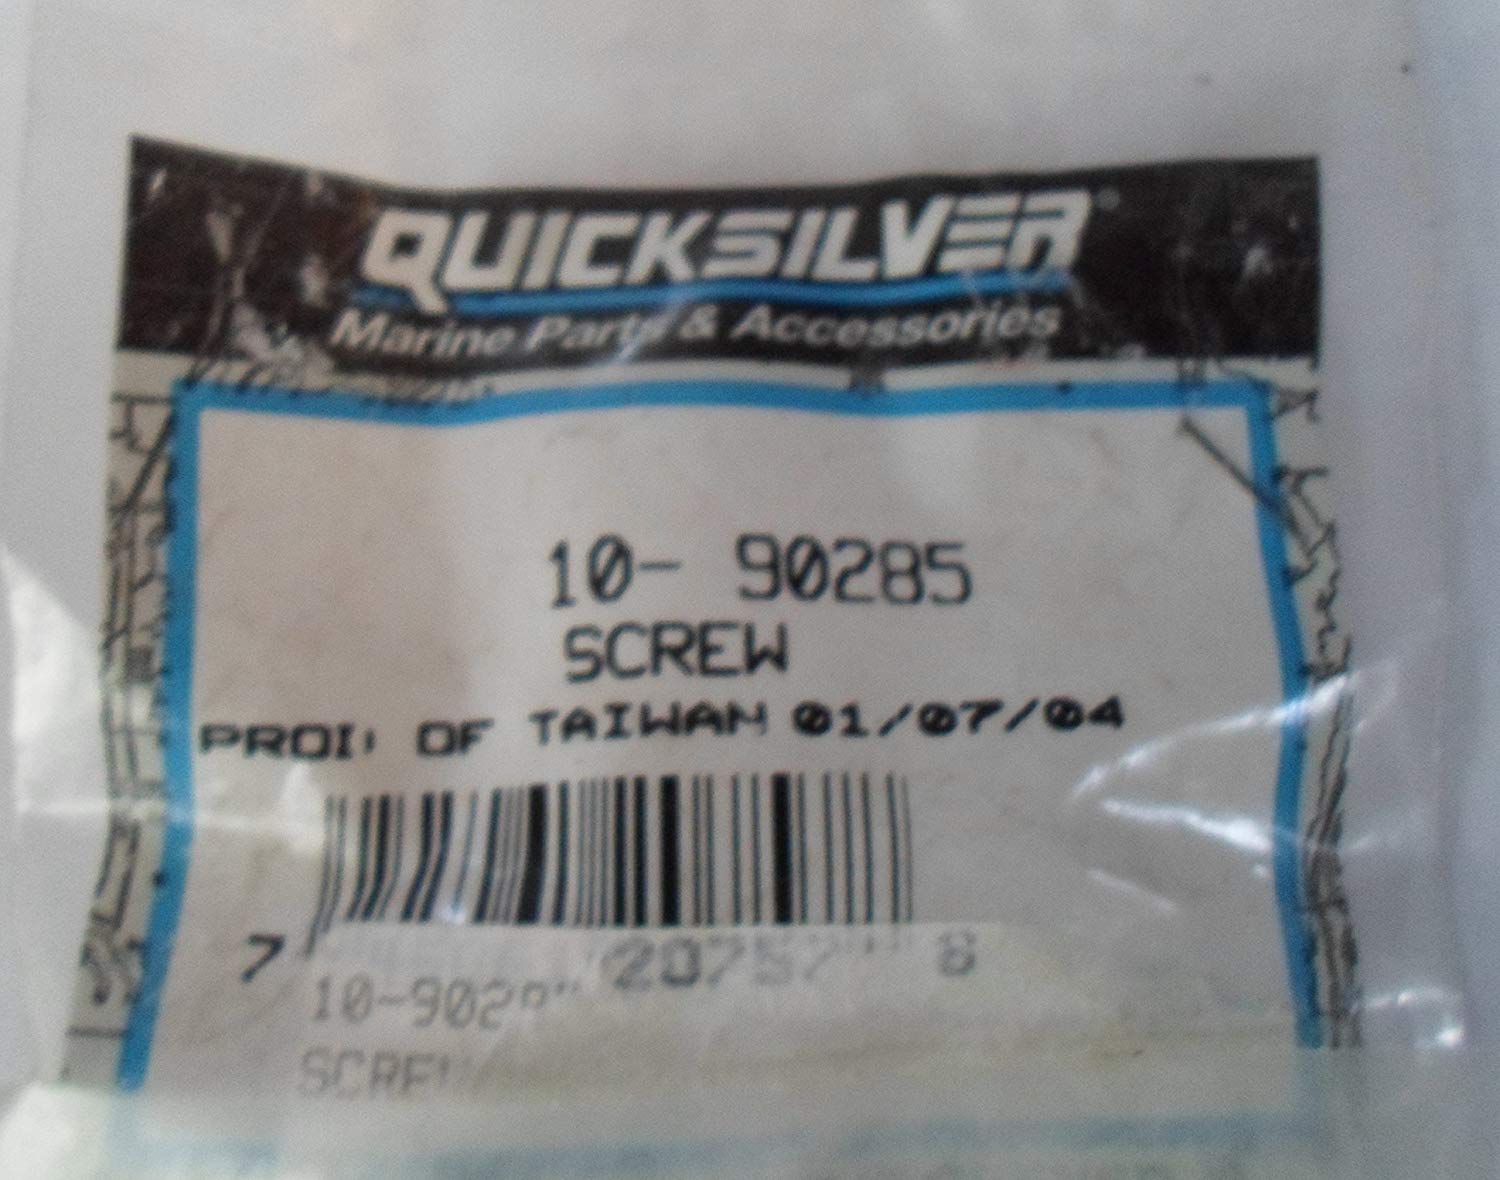 Quicksilver / Mercury 10-90285 Screw